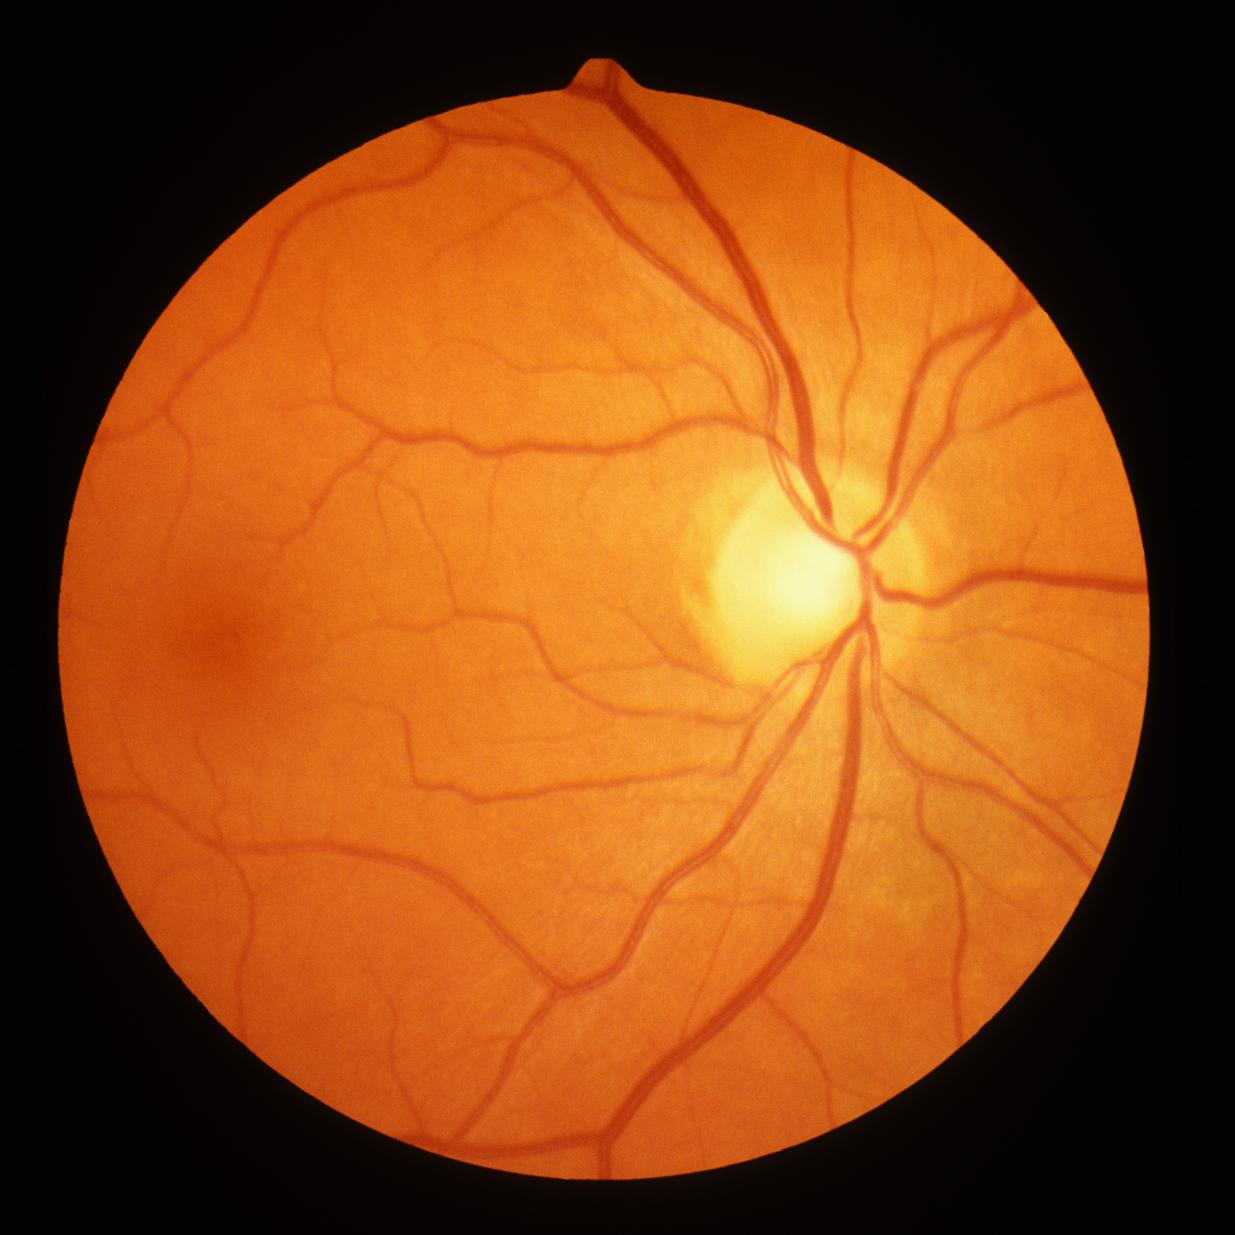 eye retina